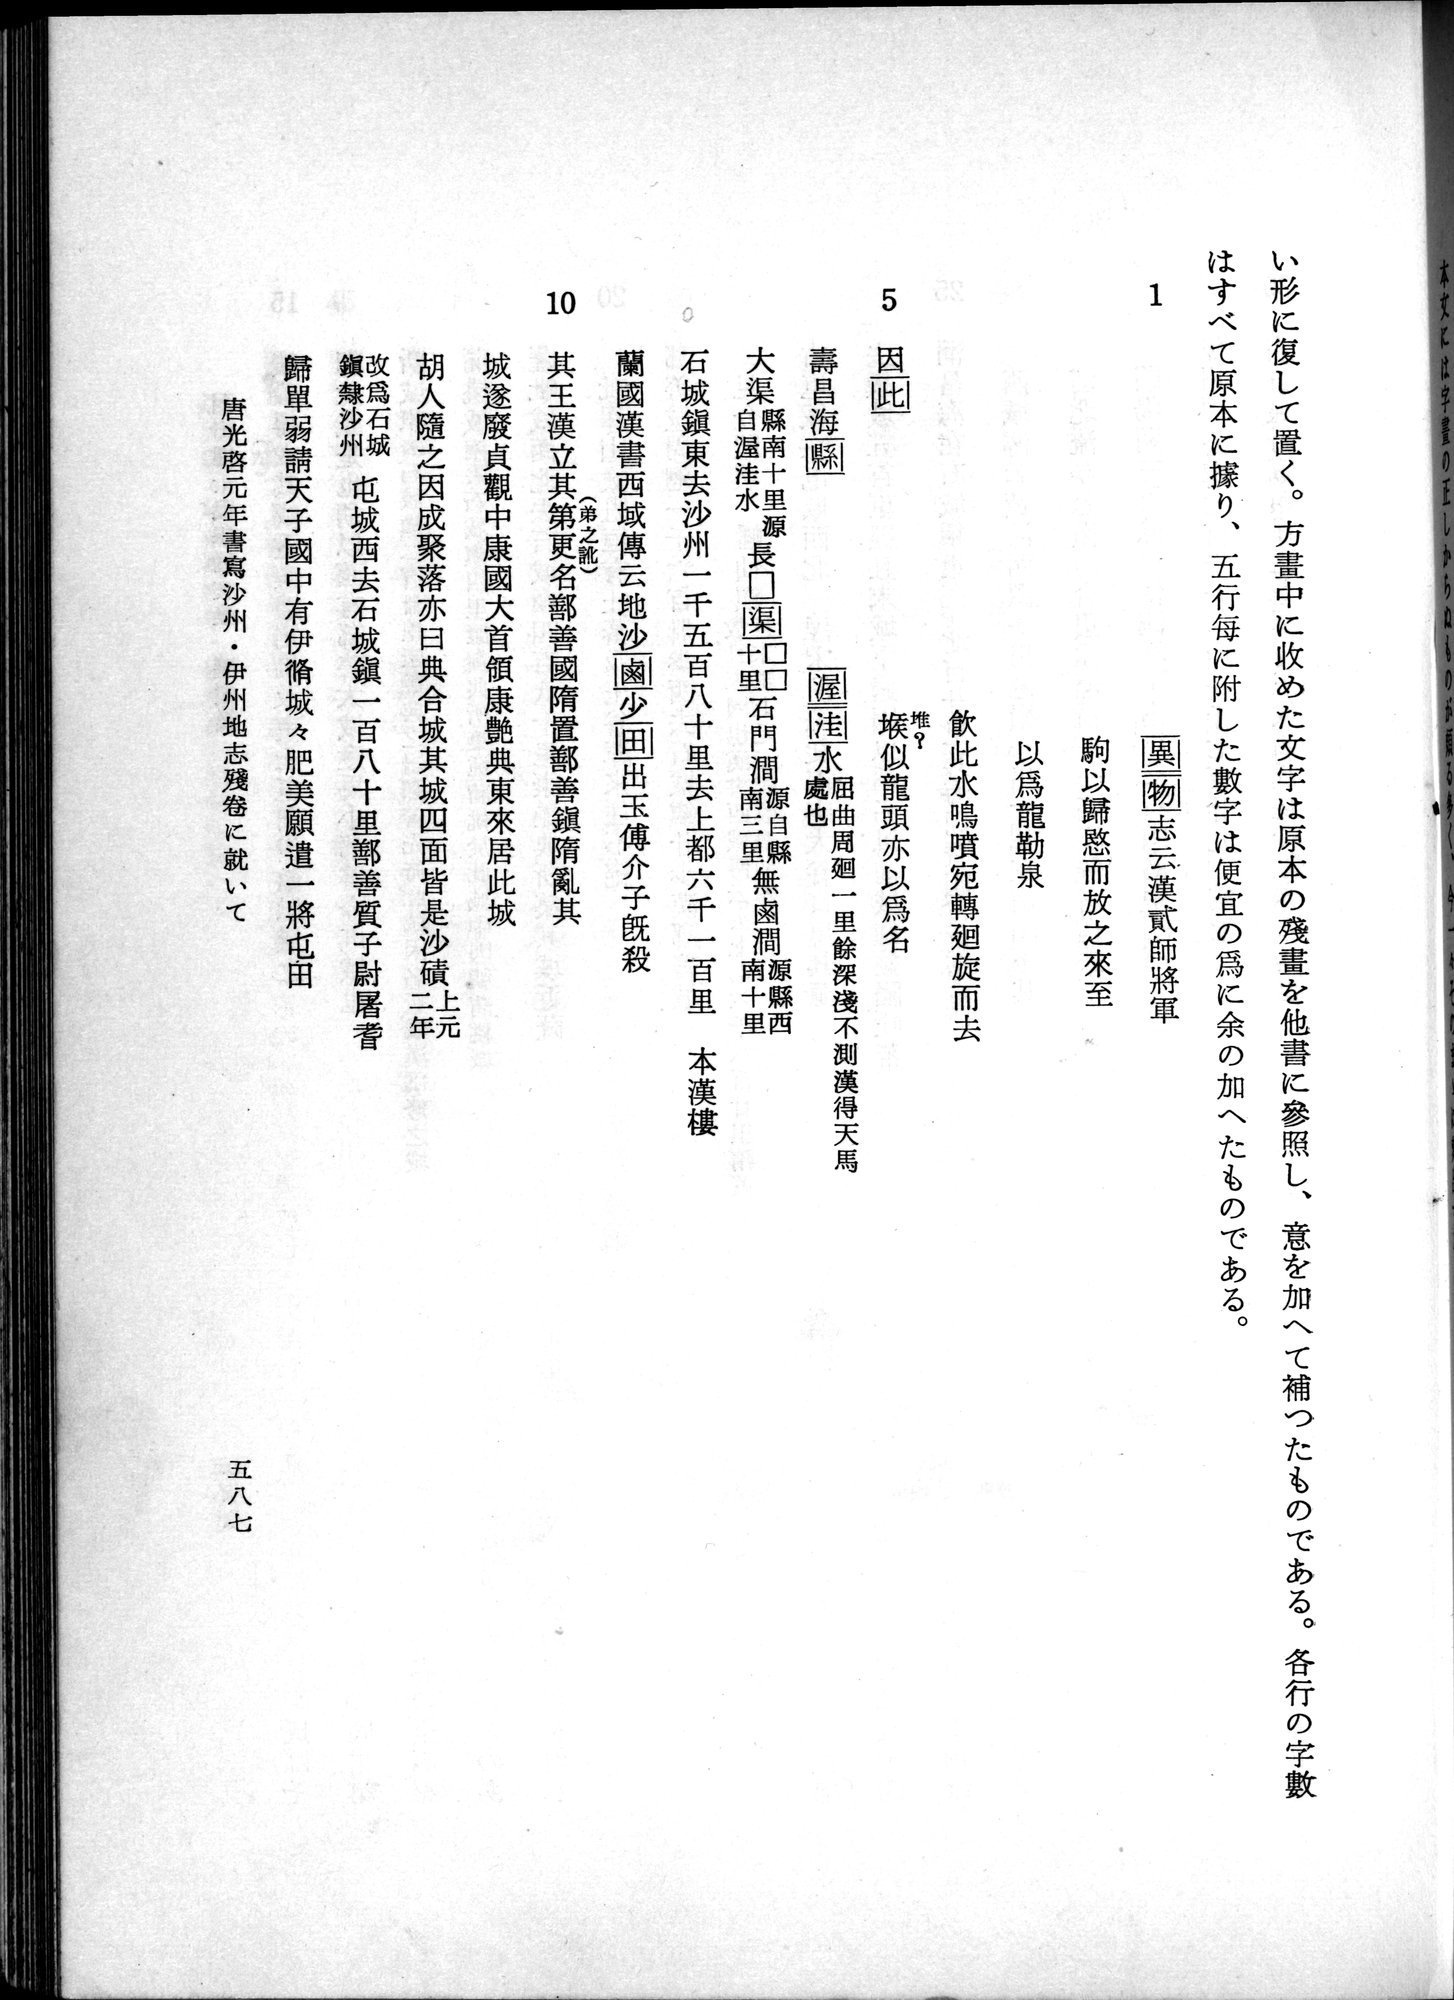 羽田博士史学論文集 : vol.1 / Page 625 (Grayscale High Resolution Image)